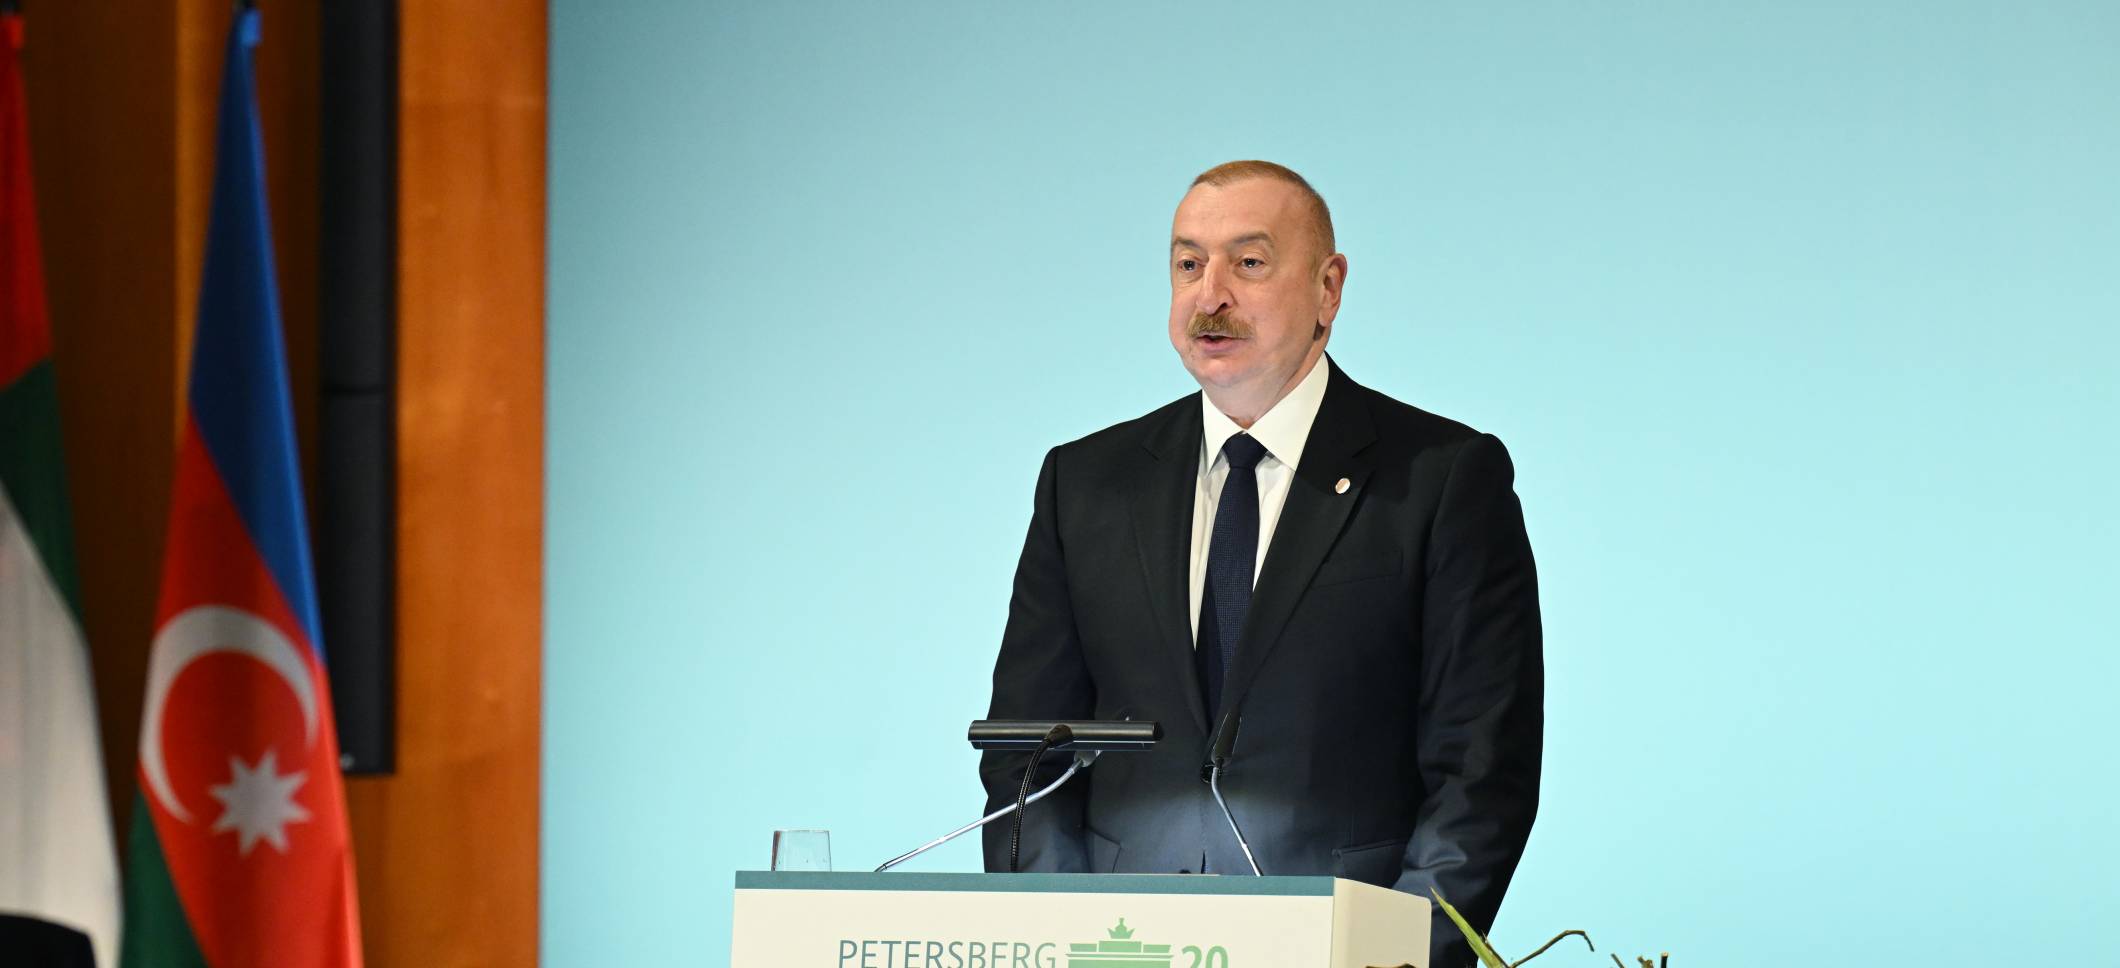 Ильхам Алиев принял участие в Сегменте высокого уровня «15-го Петерсбергского климатического диалога» в Берлине